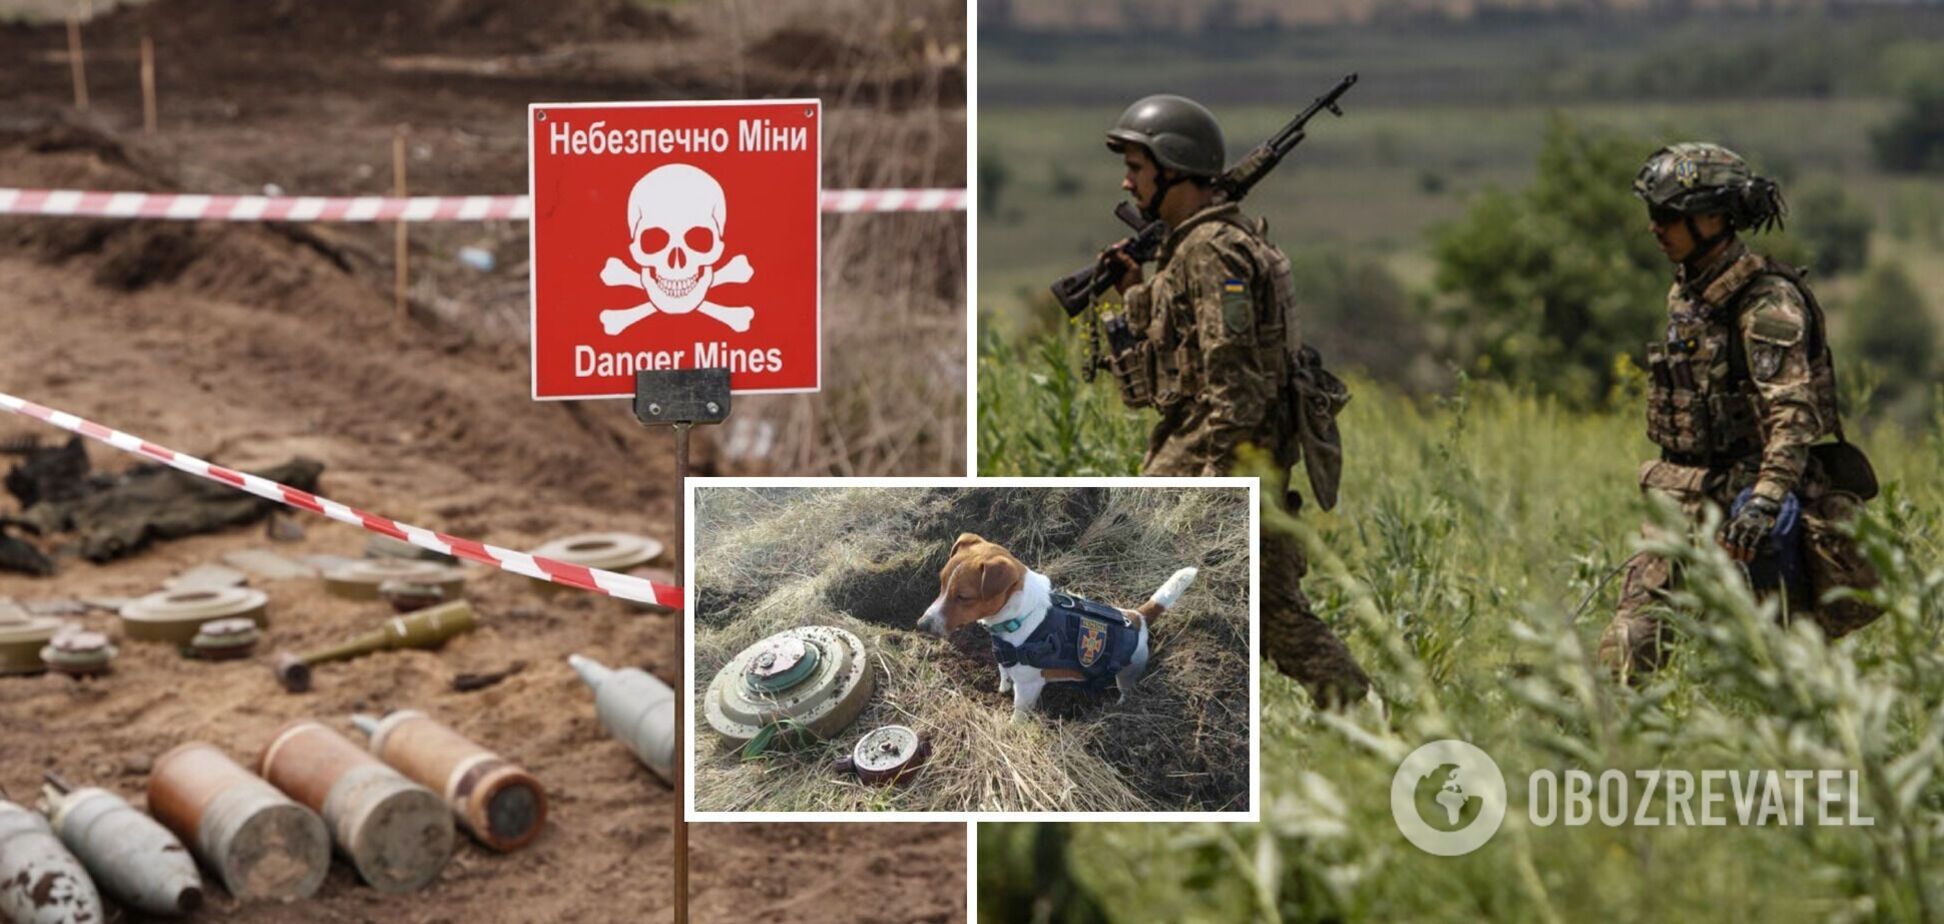 Наступление ВСУ тормозят минные поля, у союзников есть все для решения проблемы: интервью с майором Гетьманом